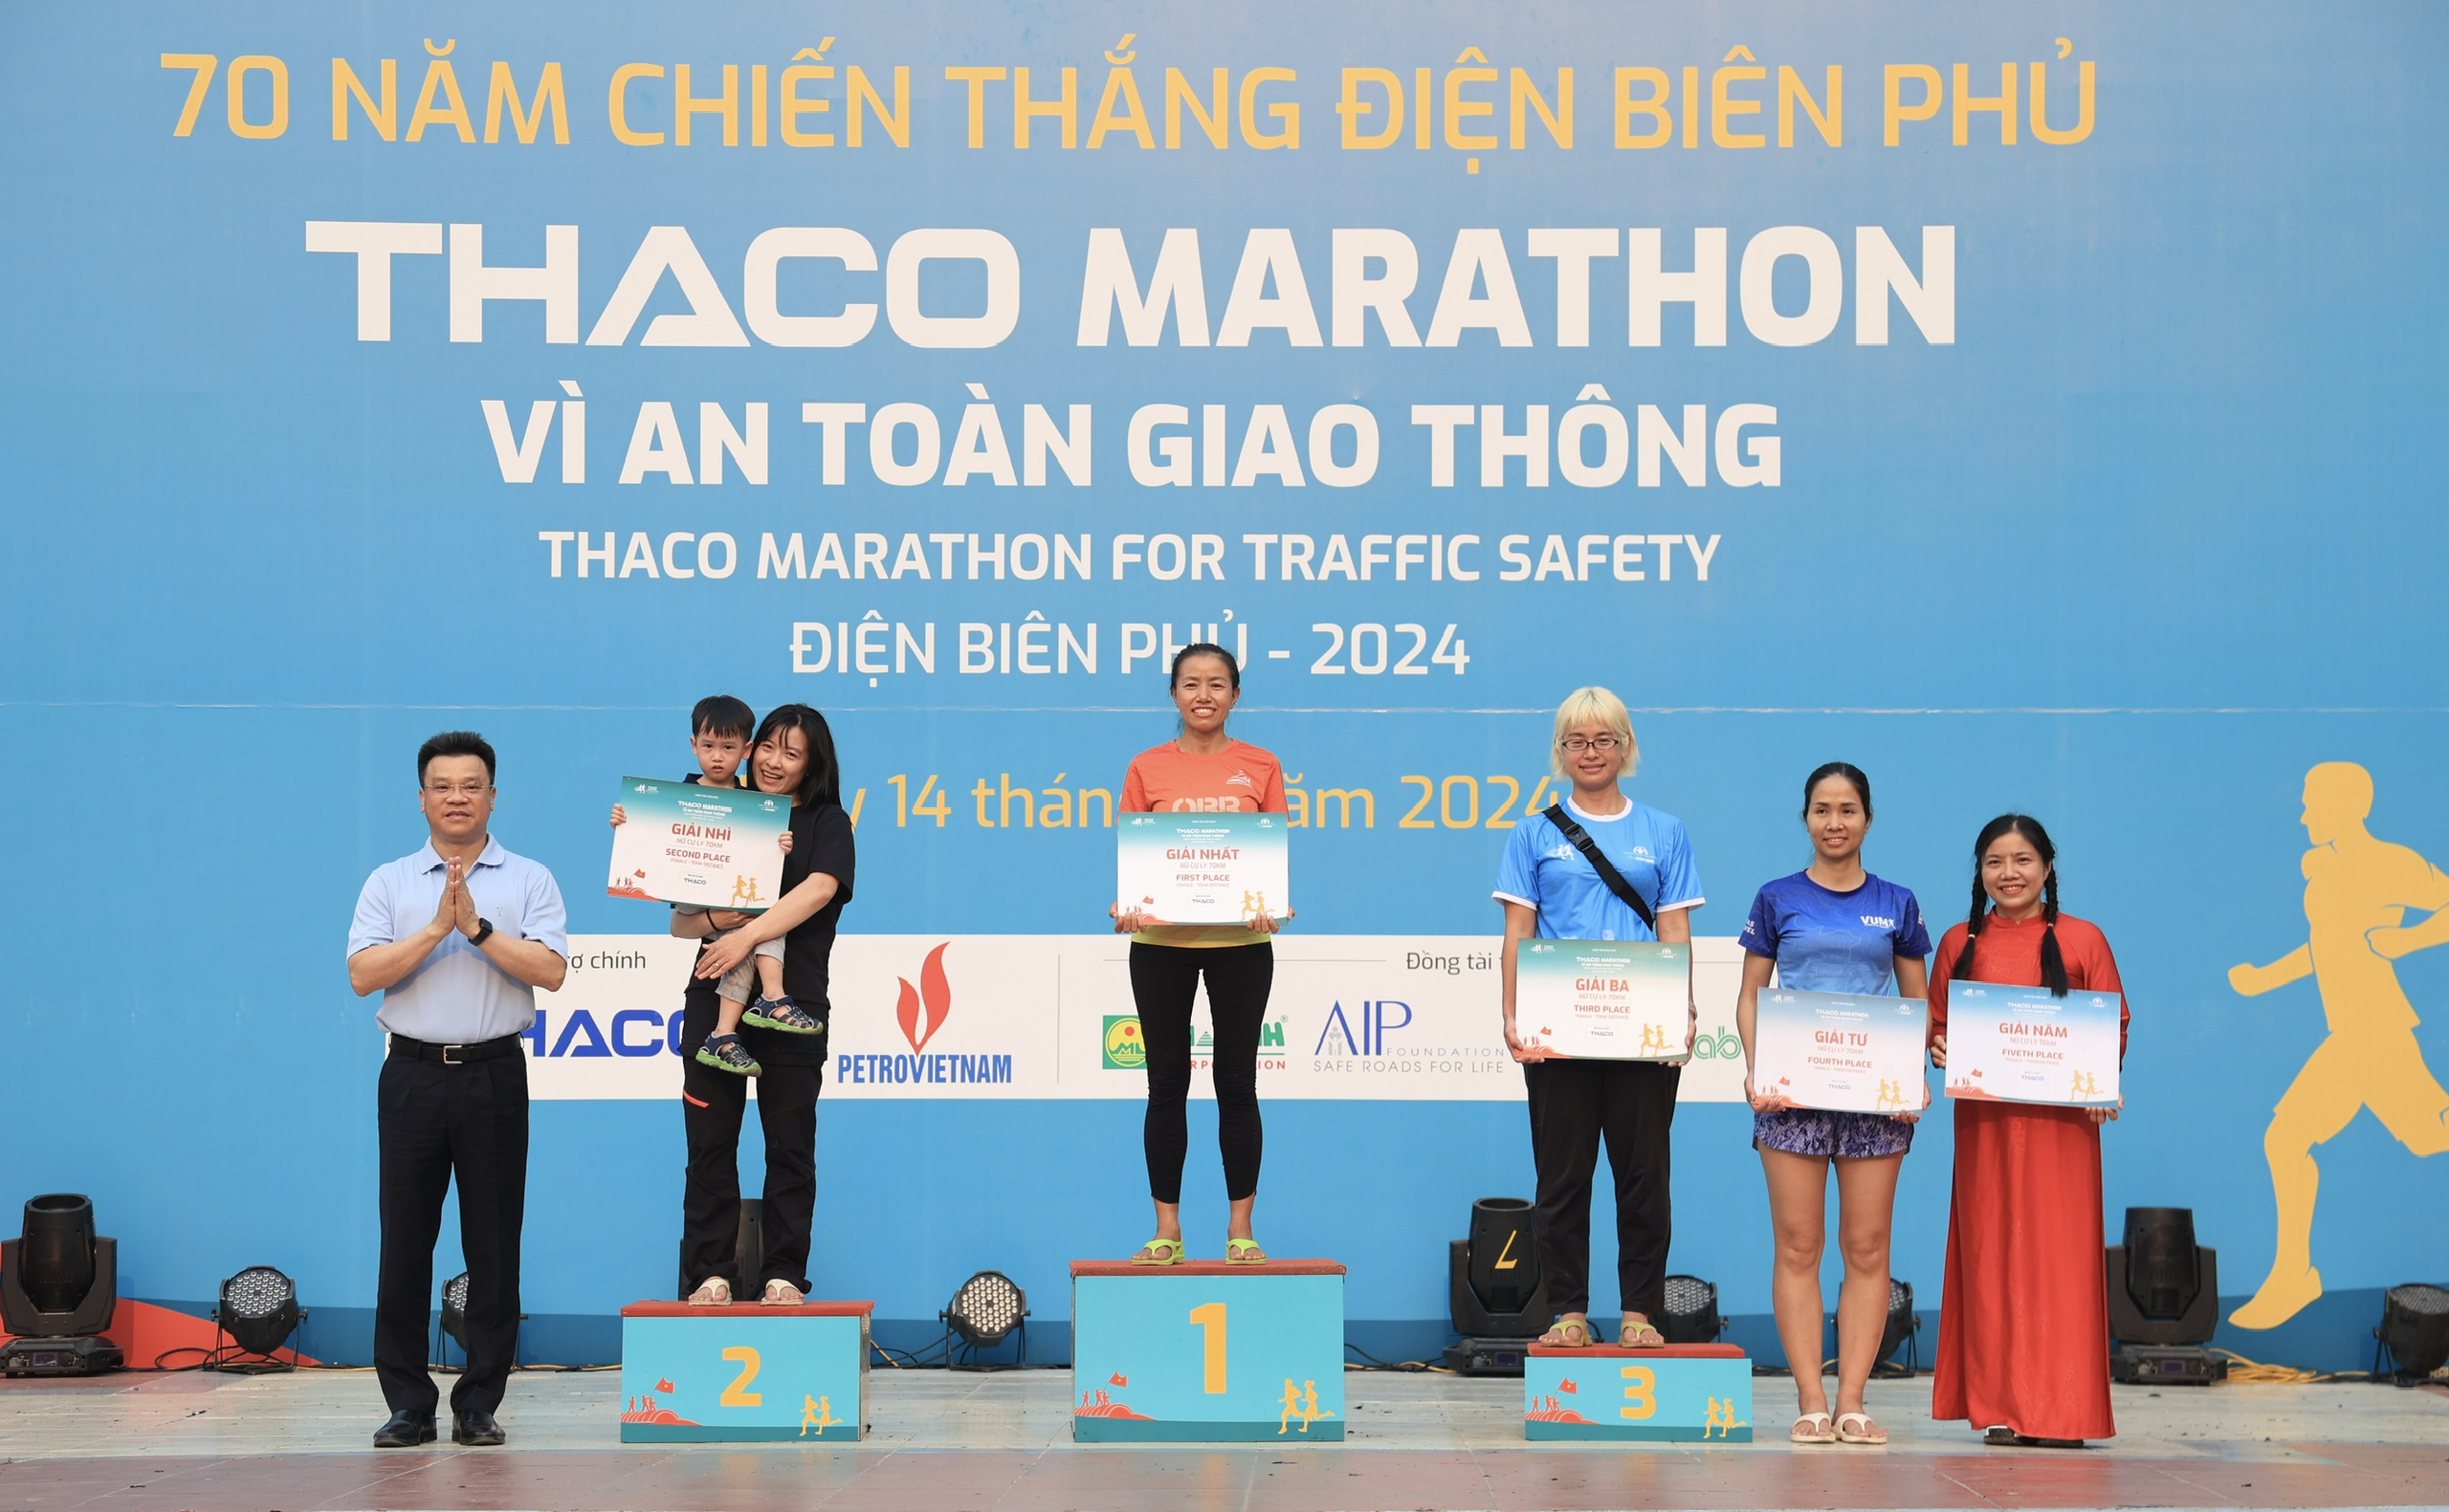 Trực tiếp: Giải THACO Marathon vì ATGT - Điện Biên Phủ 2024 thành công rực rỡ- Ảnh 4.